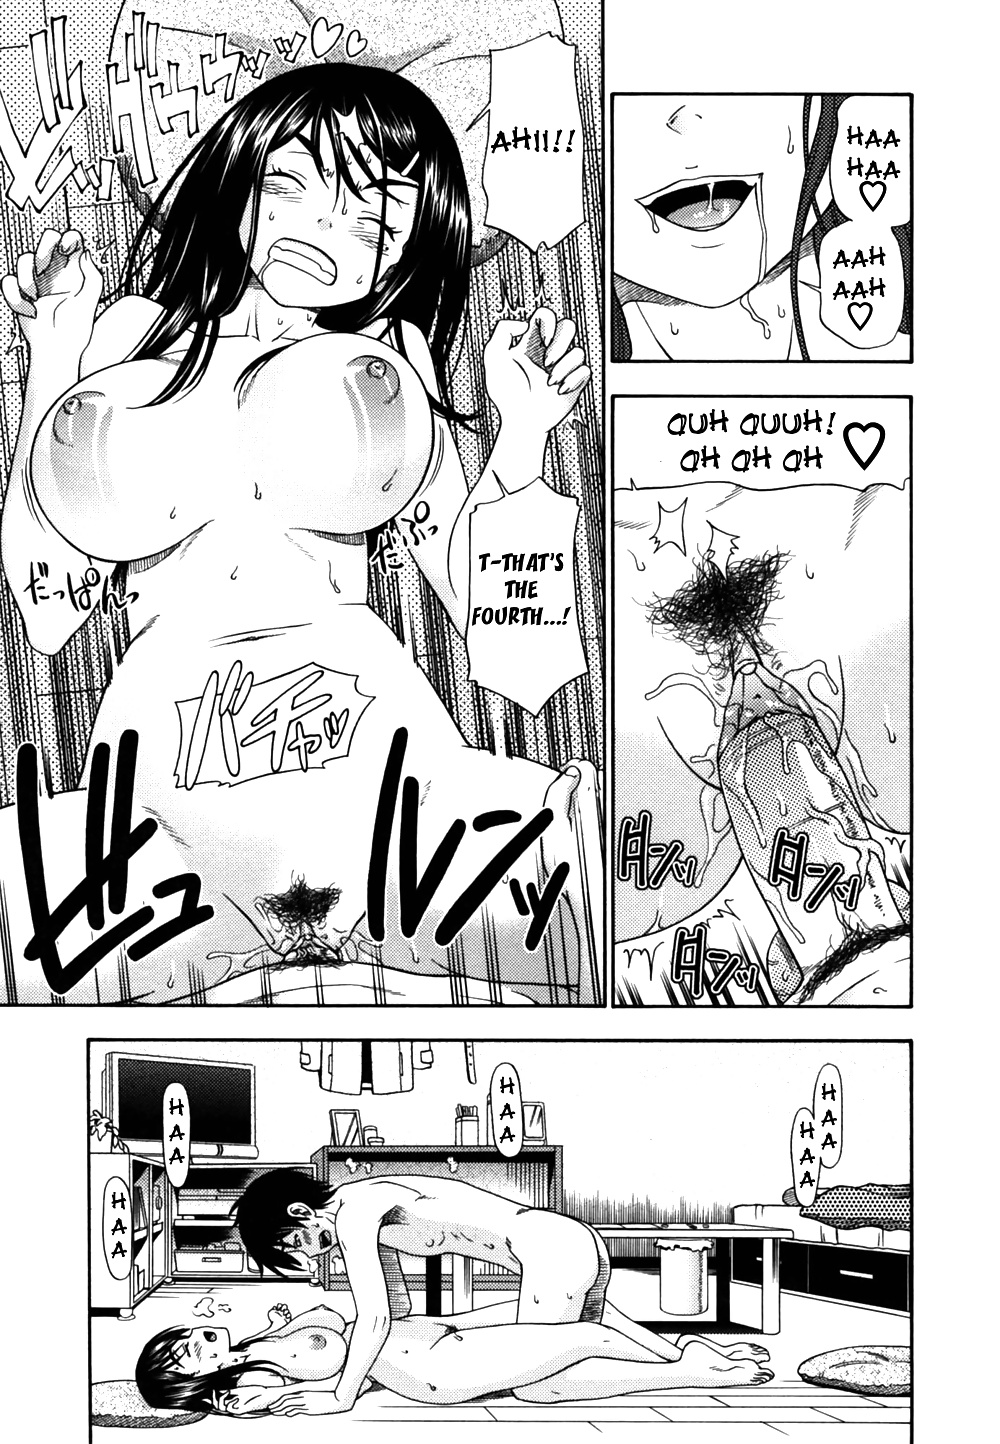 (fumetto hentai) fukudada opere erotiche #4
 #32228911